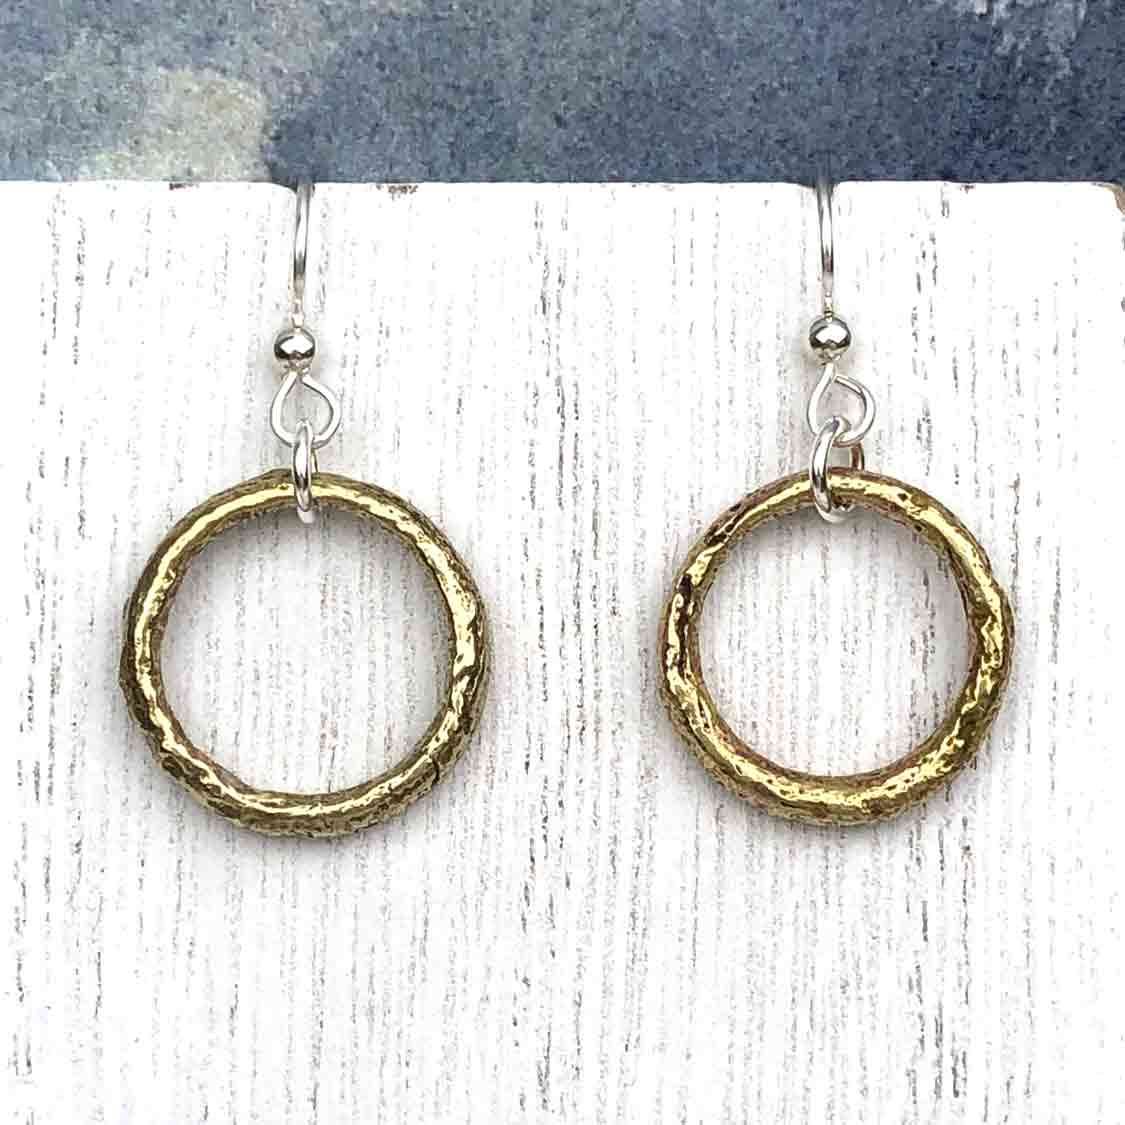 True Golden Bronze Celtic Ring Money Earrings